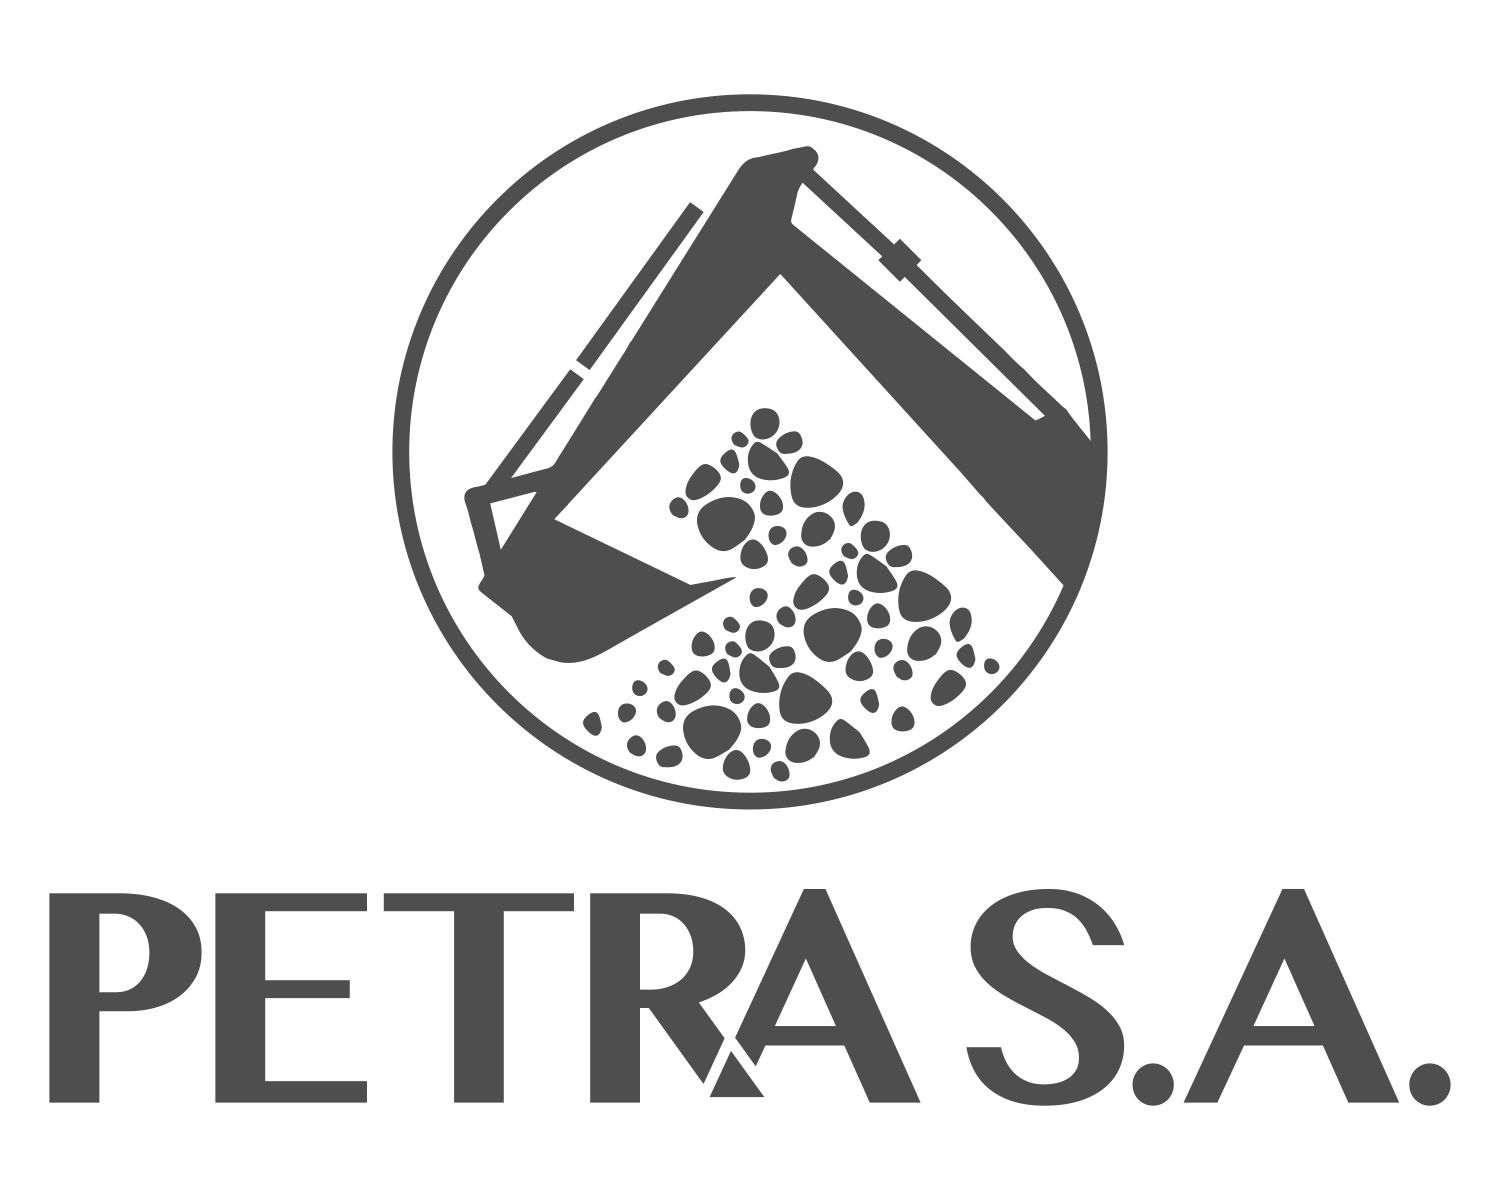 PETRA-SA-LOGO-FINAL_GRIS